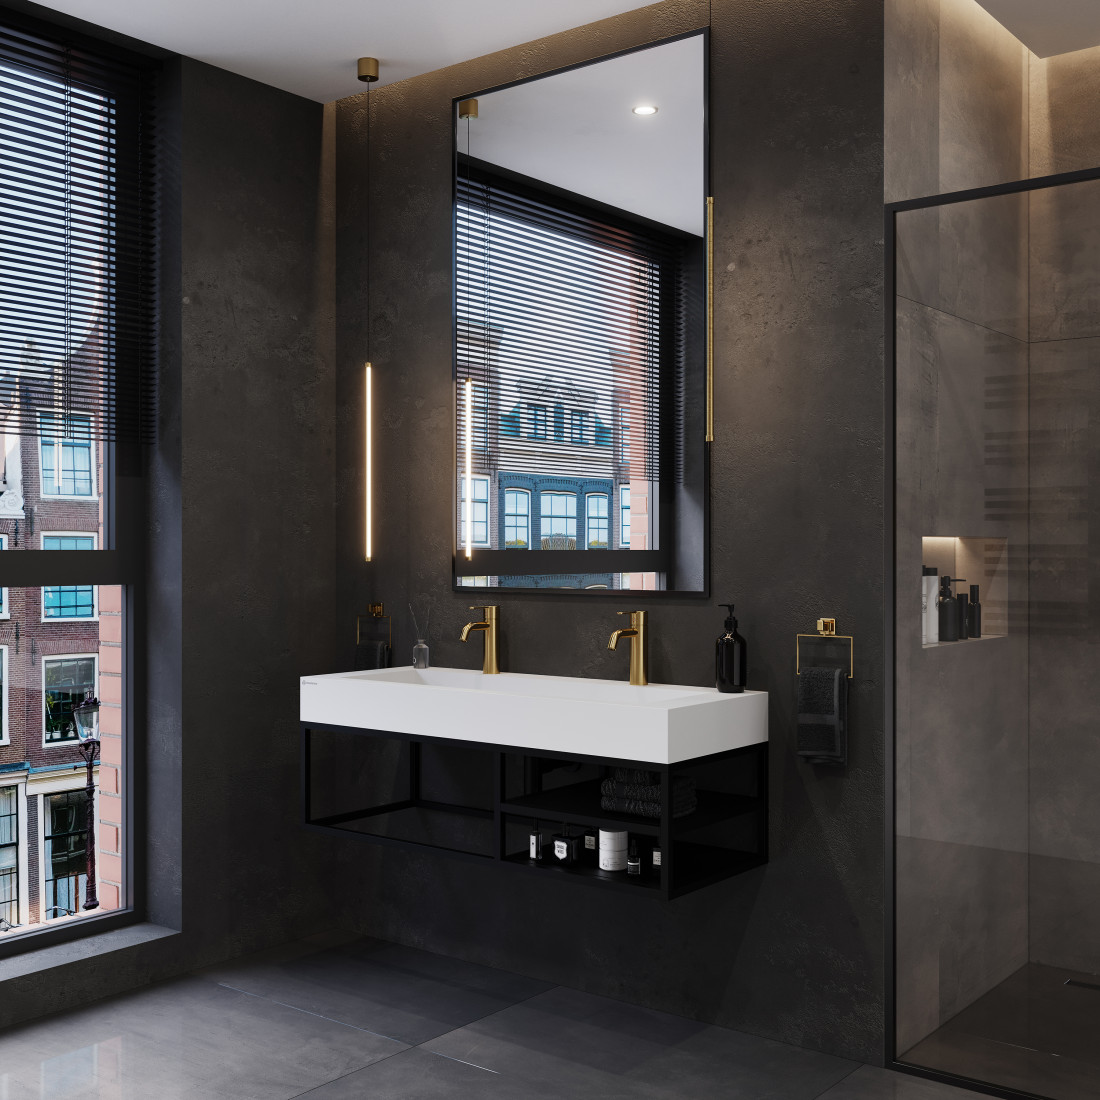 Miejska łazienka od Cristalstone®: elegancja i funkcjonalność na wysokim poziomie